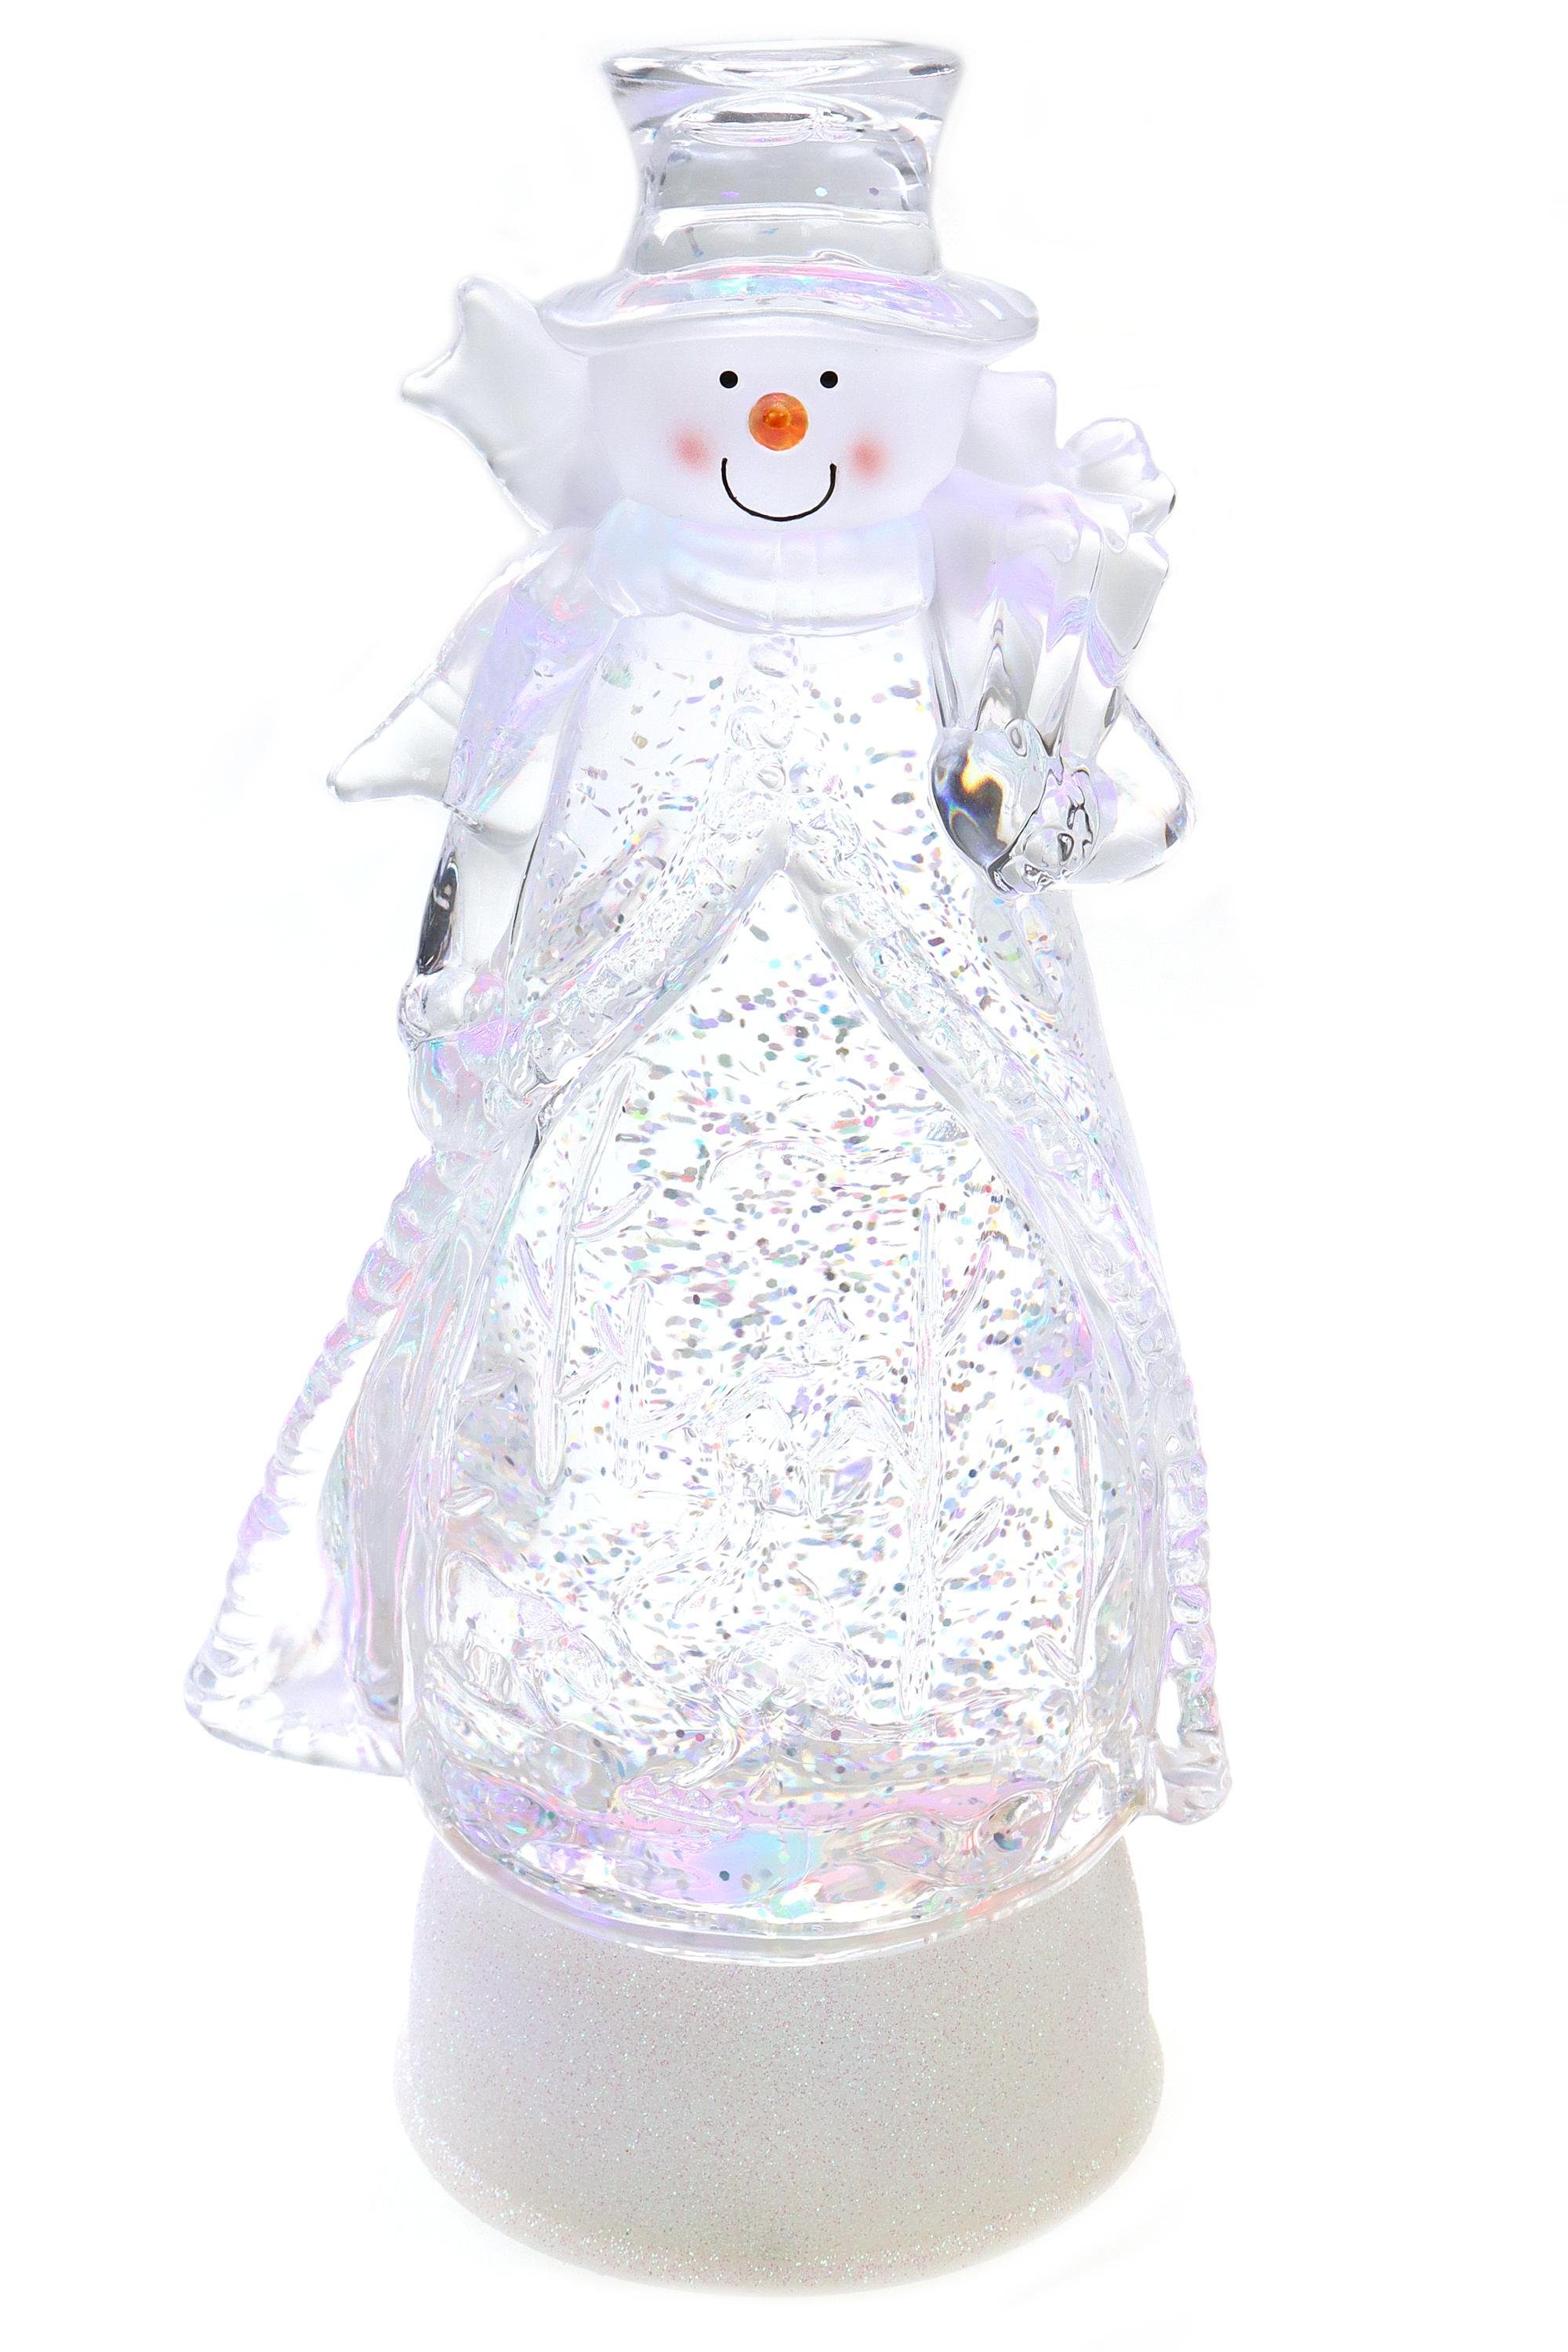 Schneekugel LED mit als Weihnachtsdeko Schneekugel Glitzerantrieb Schneemann Regenbogen ELLUG